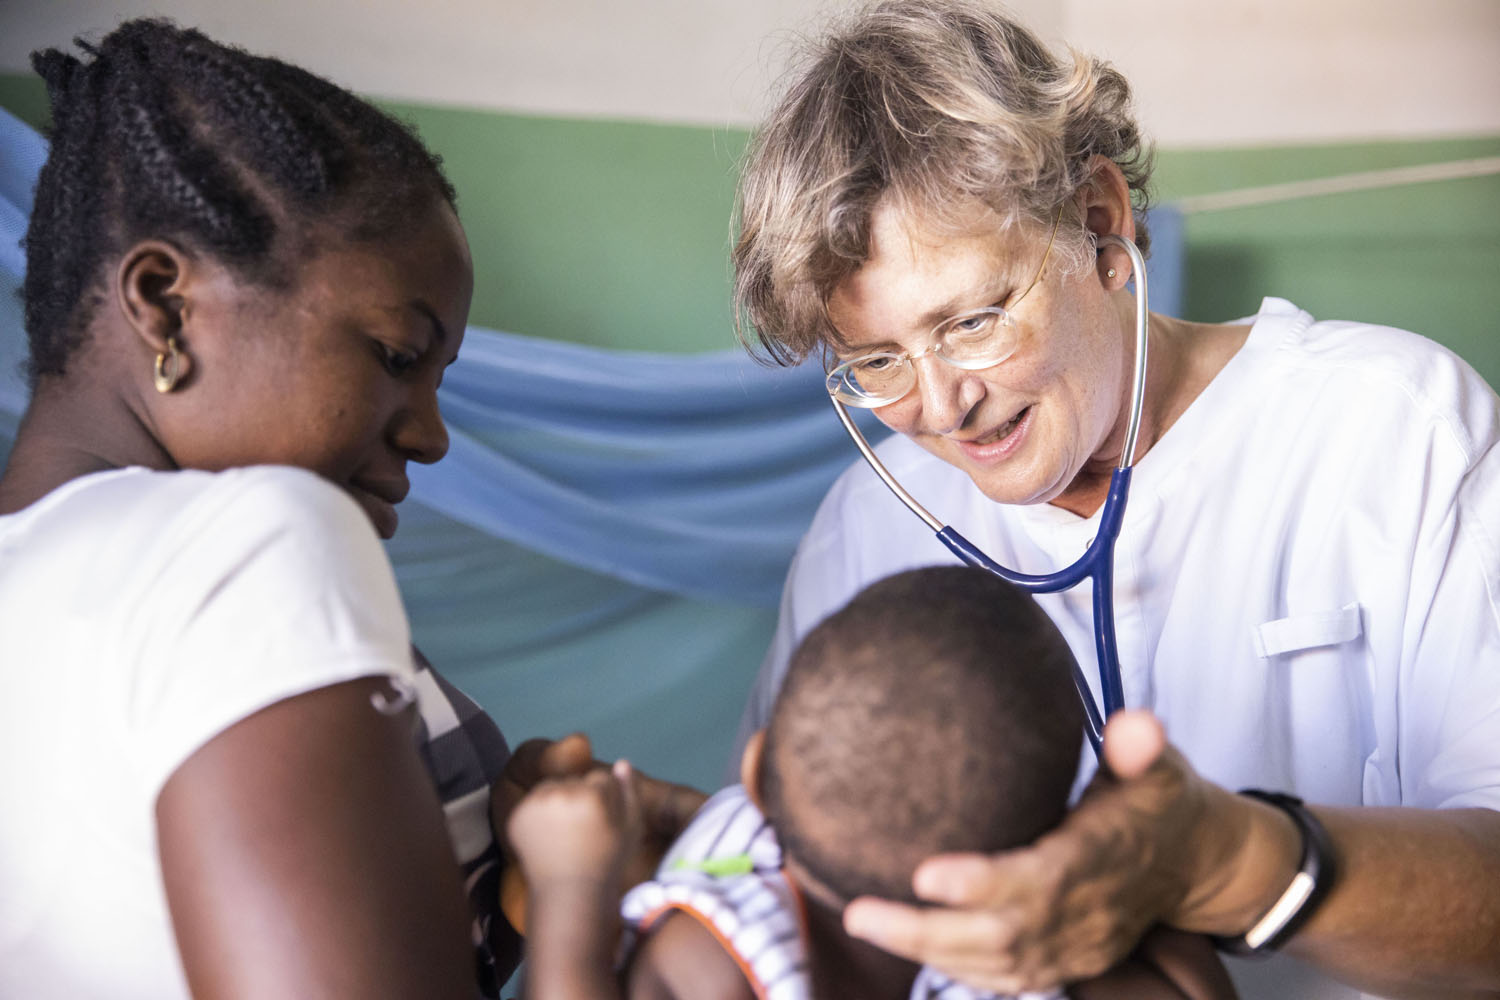 Healthcare Fotografie: Dr Elke Kleuren-Schrievers untersucht in der Kinderstation eines afrikanischen Krankenhauses ein Säugling. Die junge Mutter hält das Kind.